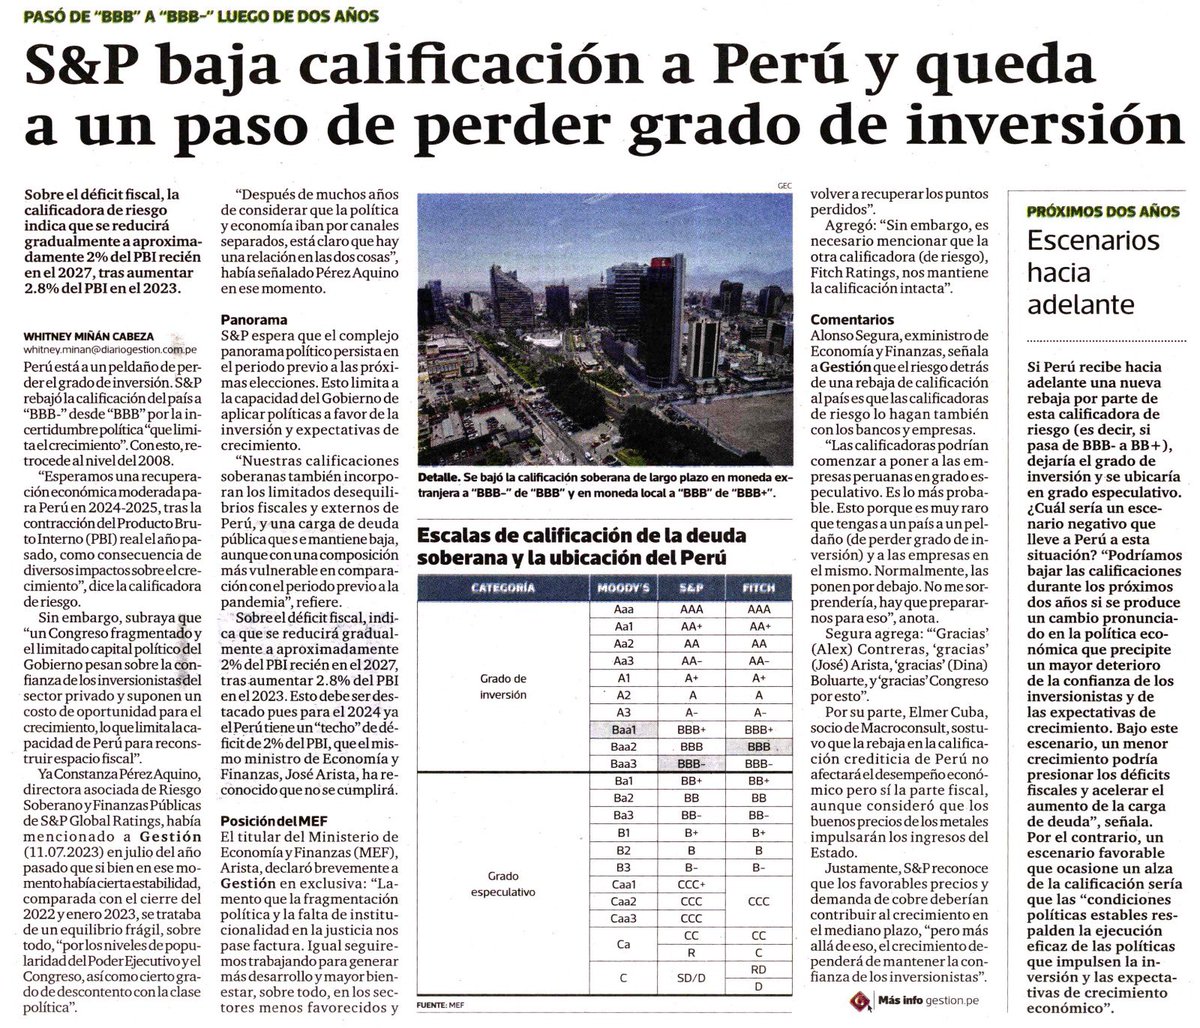 Lamentable. Una serie de medidas populistas vienen causando un daño muy severo a los pilares económicos que permitieron al Perú crecer y reducir la pobreza en el pasado.